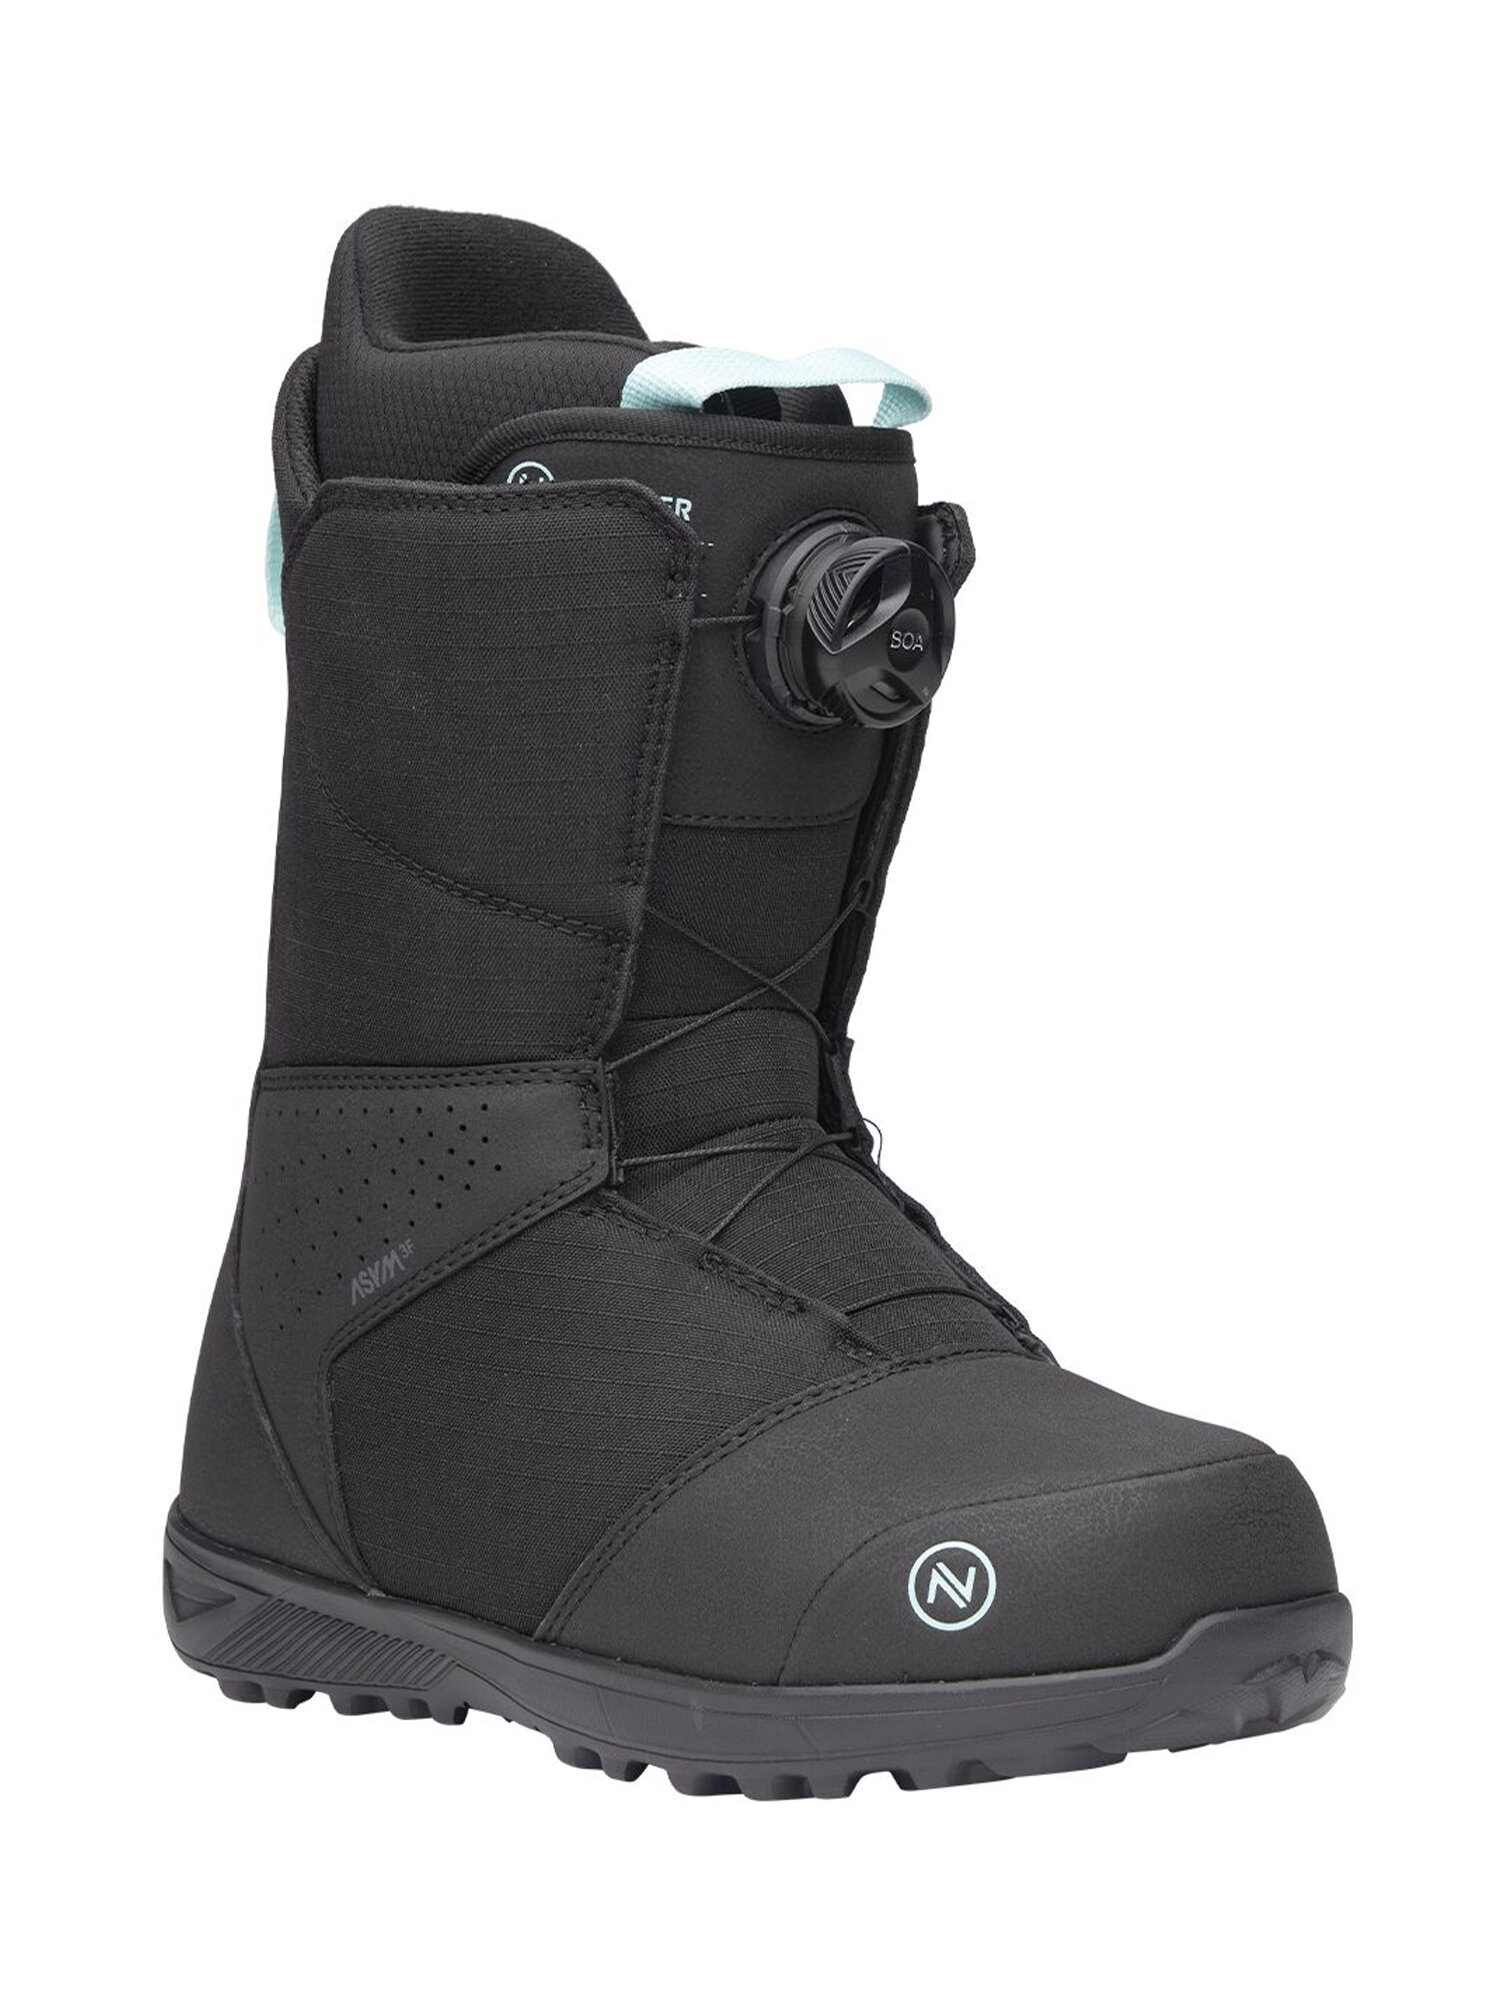 Ботинки для сноуборда NIDECKER Sierra W Black (US:6)